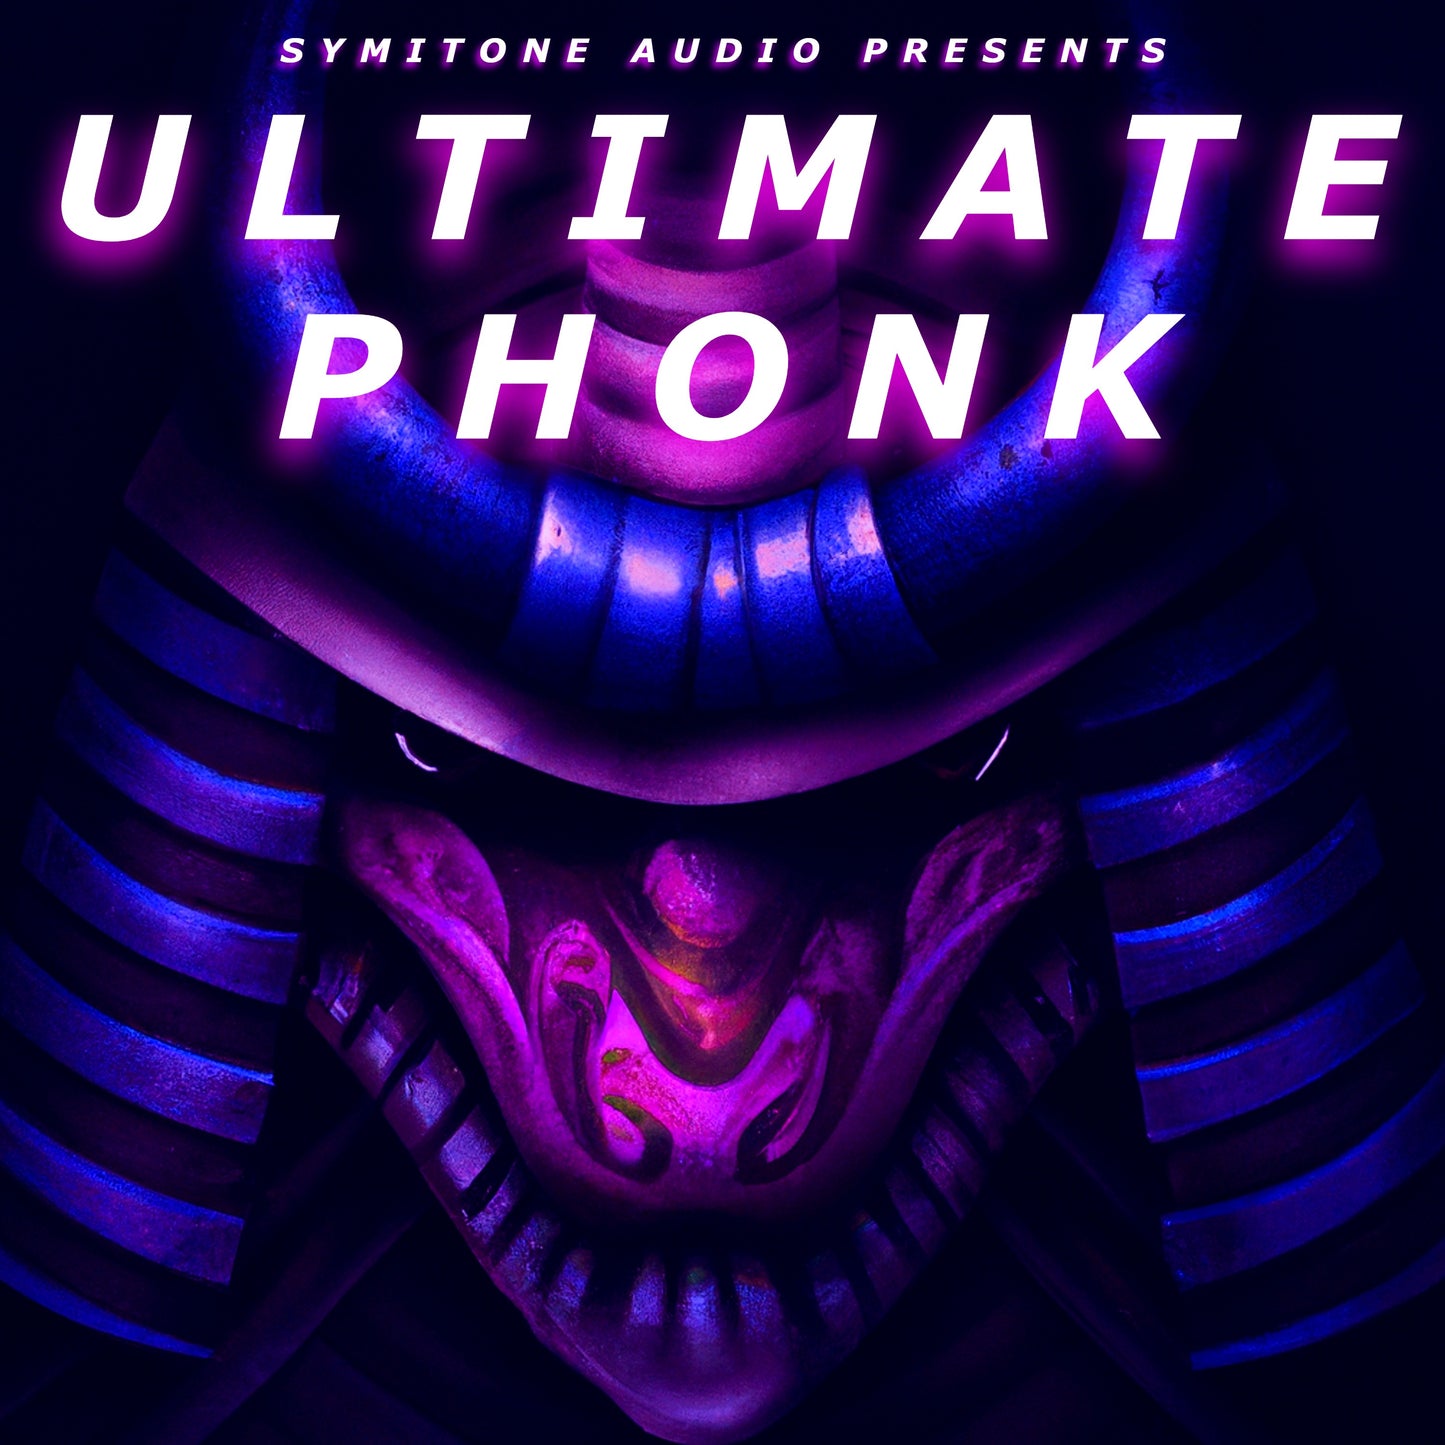 Ultimate Phonk Pack Bundle - Complete Phonk Sample Kit